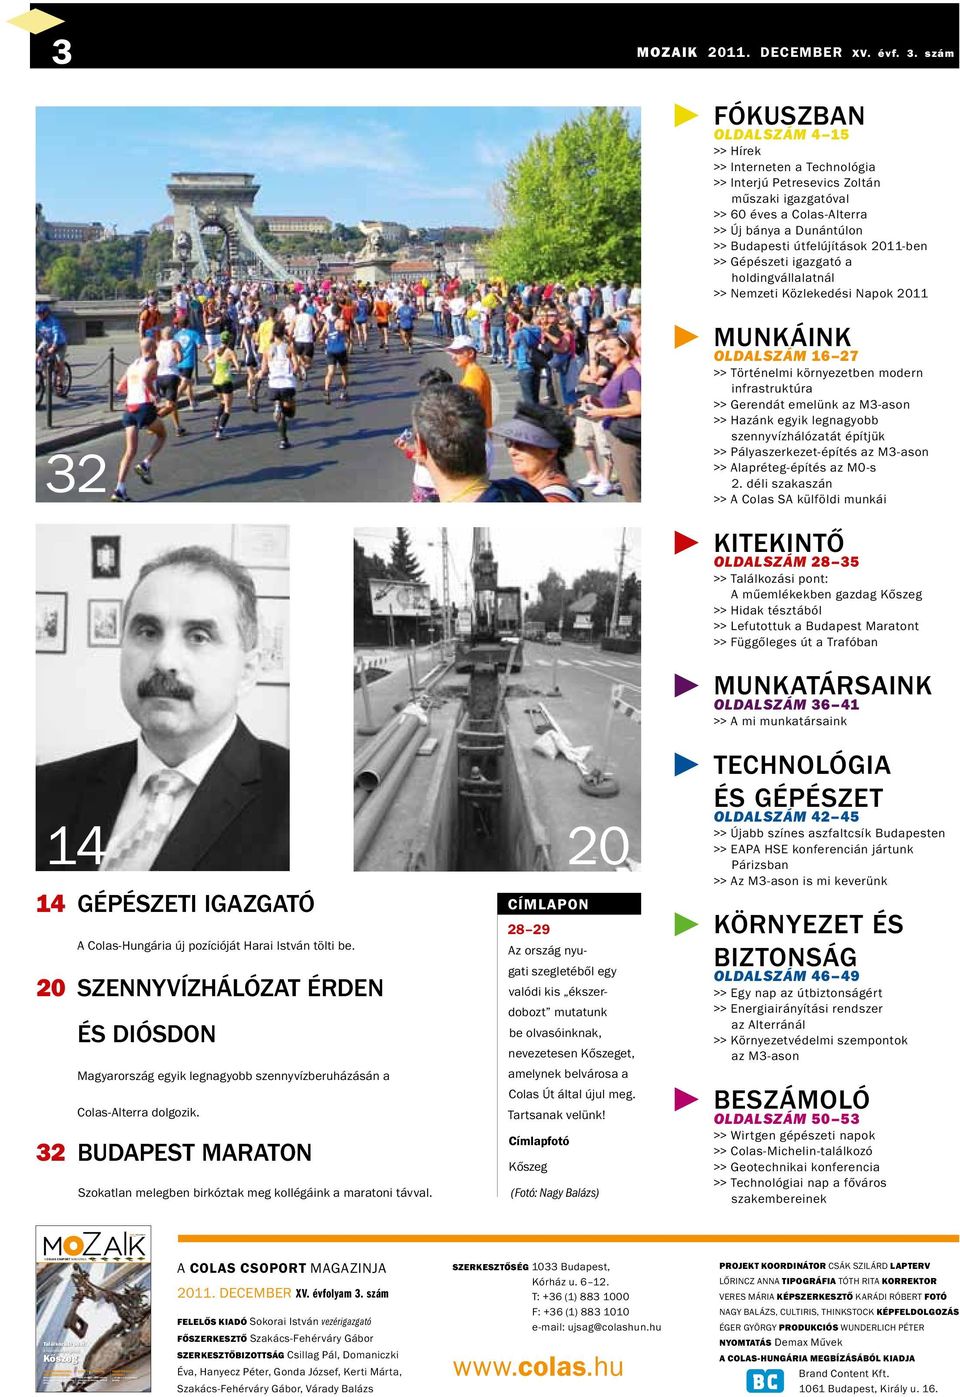 20 szennyvízhálózat Érden és Diósdon Magyarország egyik legnagyobb szennyvízberuházásán a Colas-Alterra dolgozik. 32 Budapest Maraton Szokatlan melegben birkóztak meg kollégáink a maratoni távval.